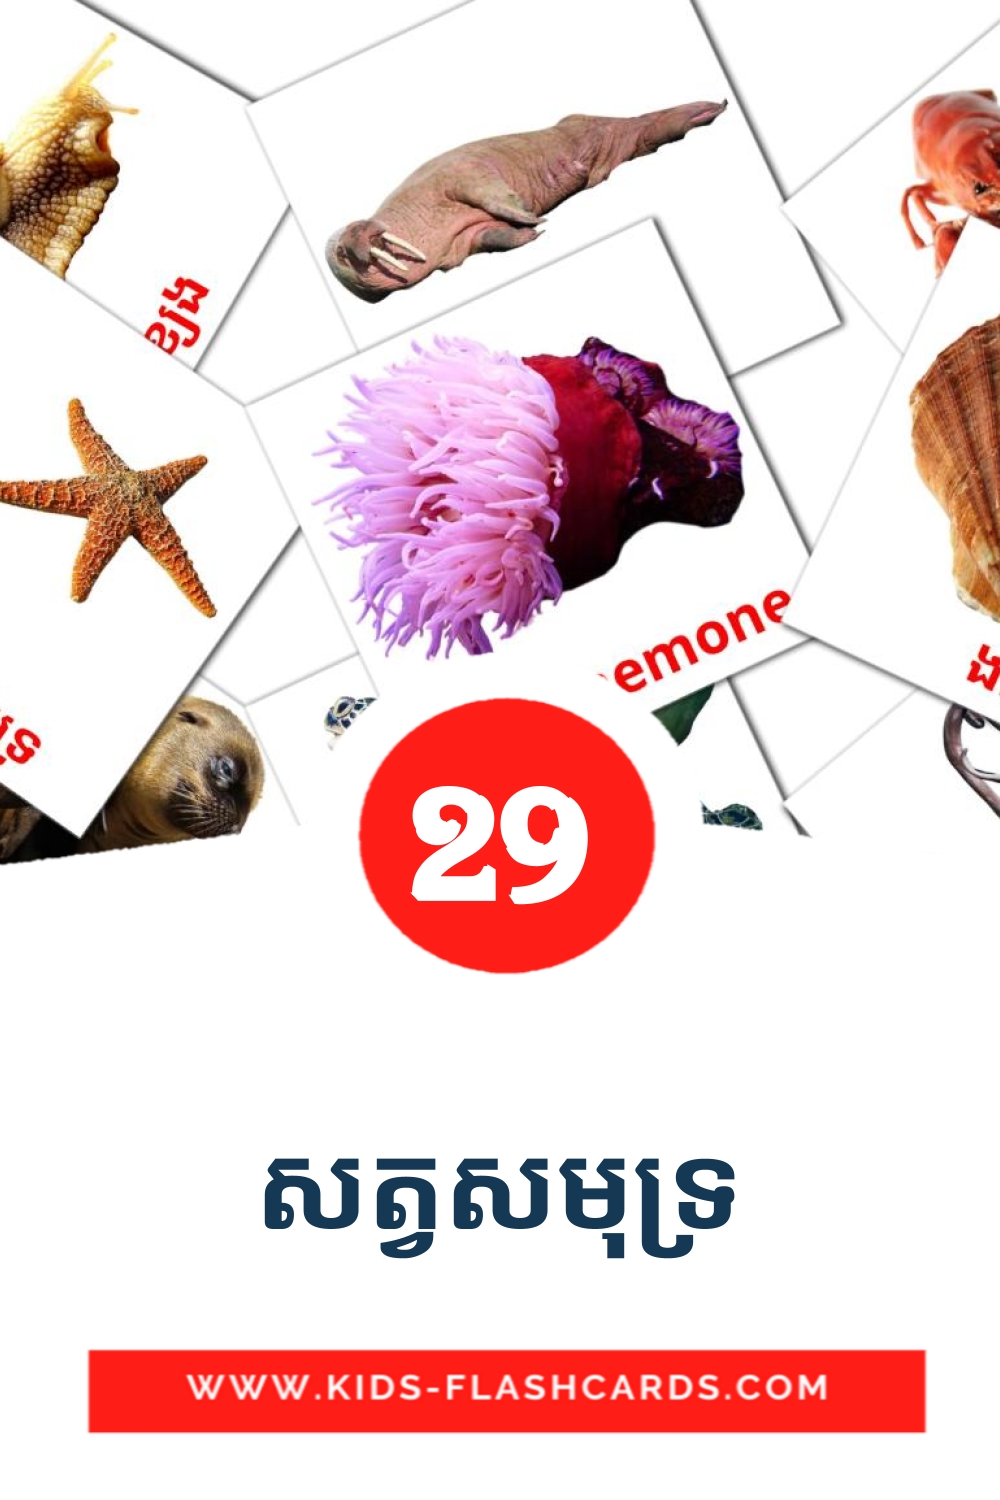 29 Cartões com Imagens de សត្វសមុទ្រ para Jardim de Infância em khmer